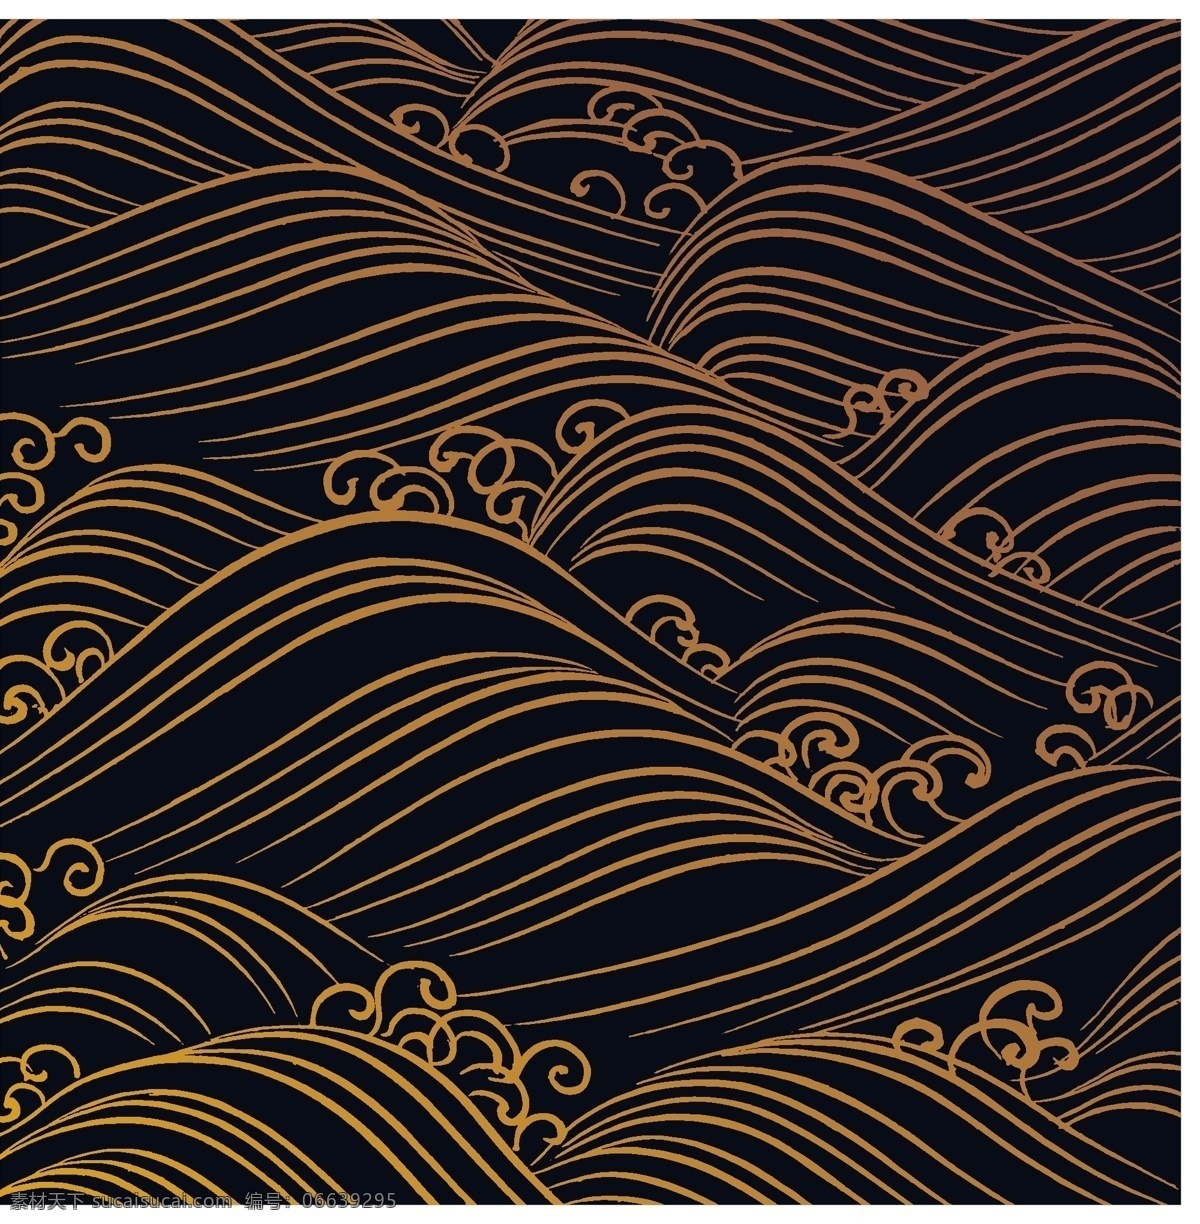 水纹 传统 日本 图案 底纹边框 底纹背景 矢量 矢量图库